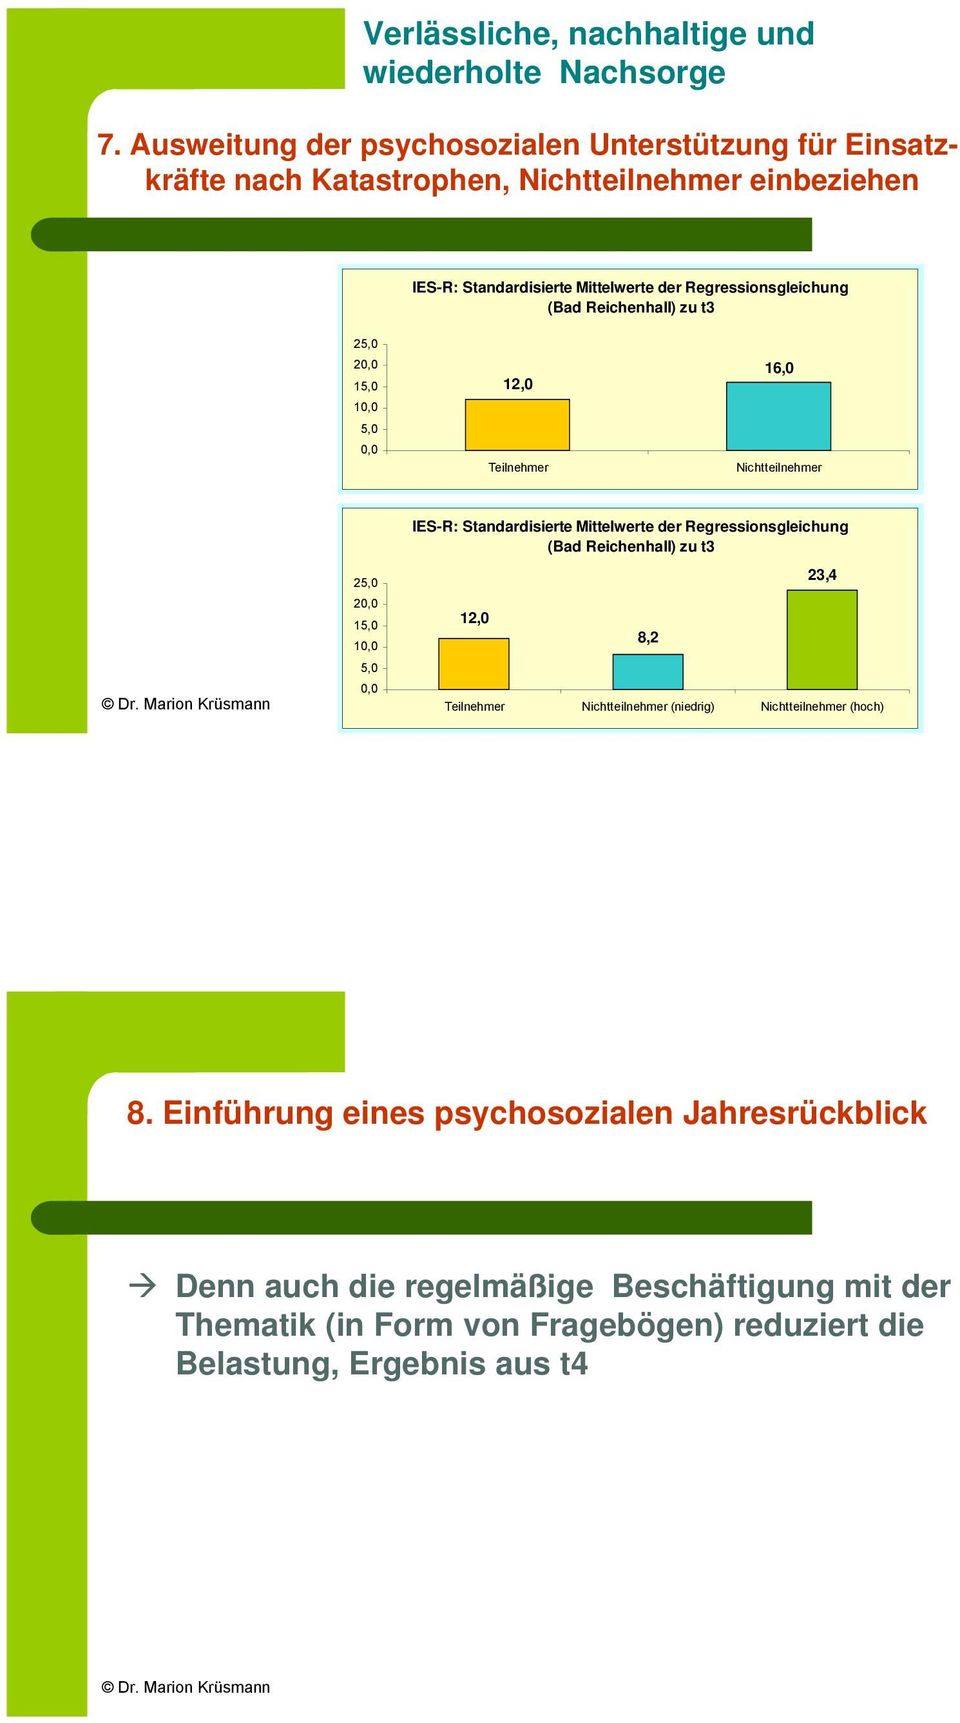 Regressionsgleichung (Bad Reichenhall) zu t3 25,0 20,0 15,0 10,0 5,0 0,0 12,0 Teilnehmer 16,0 Nichtteilnehmer 25,0 20,0 15,0 10,0 5,0 0,0 IES-R: Standardisierte